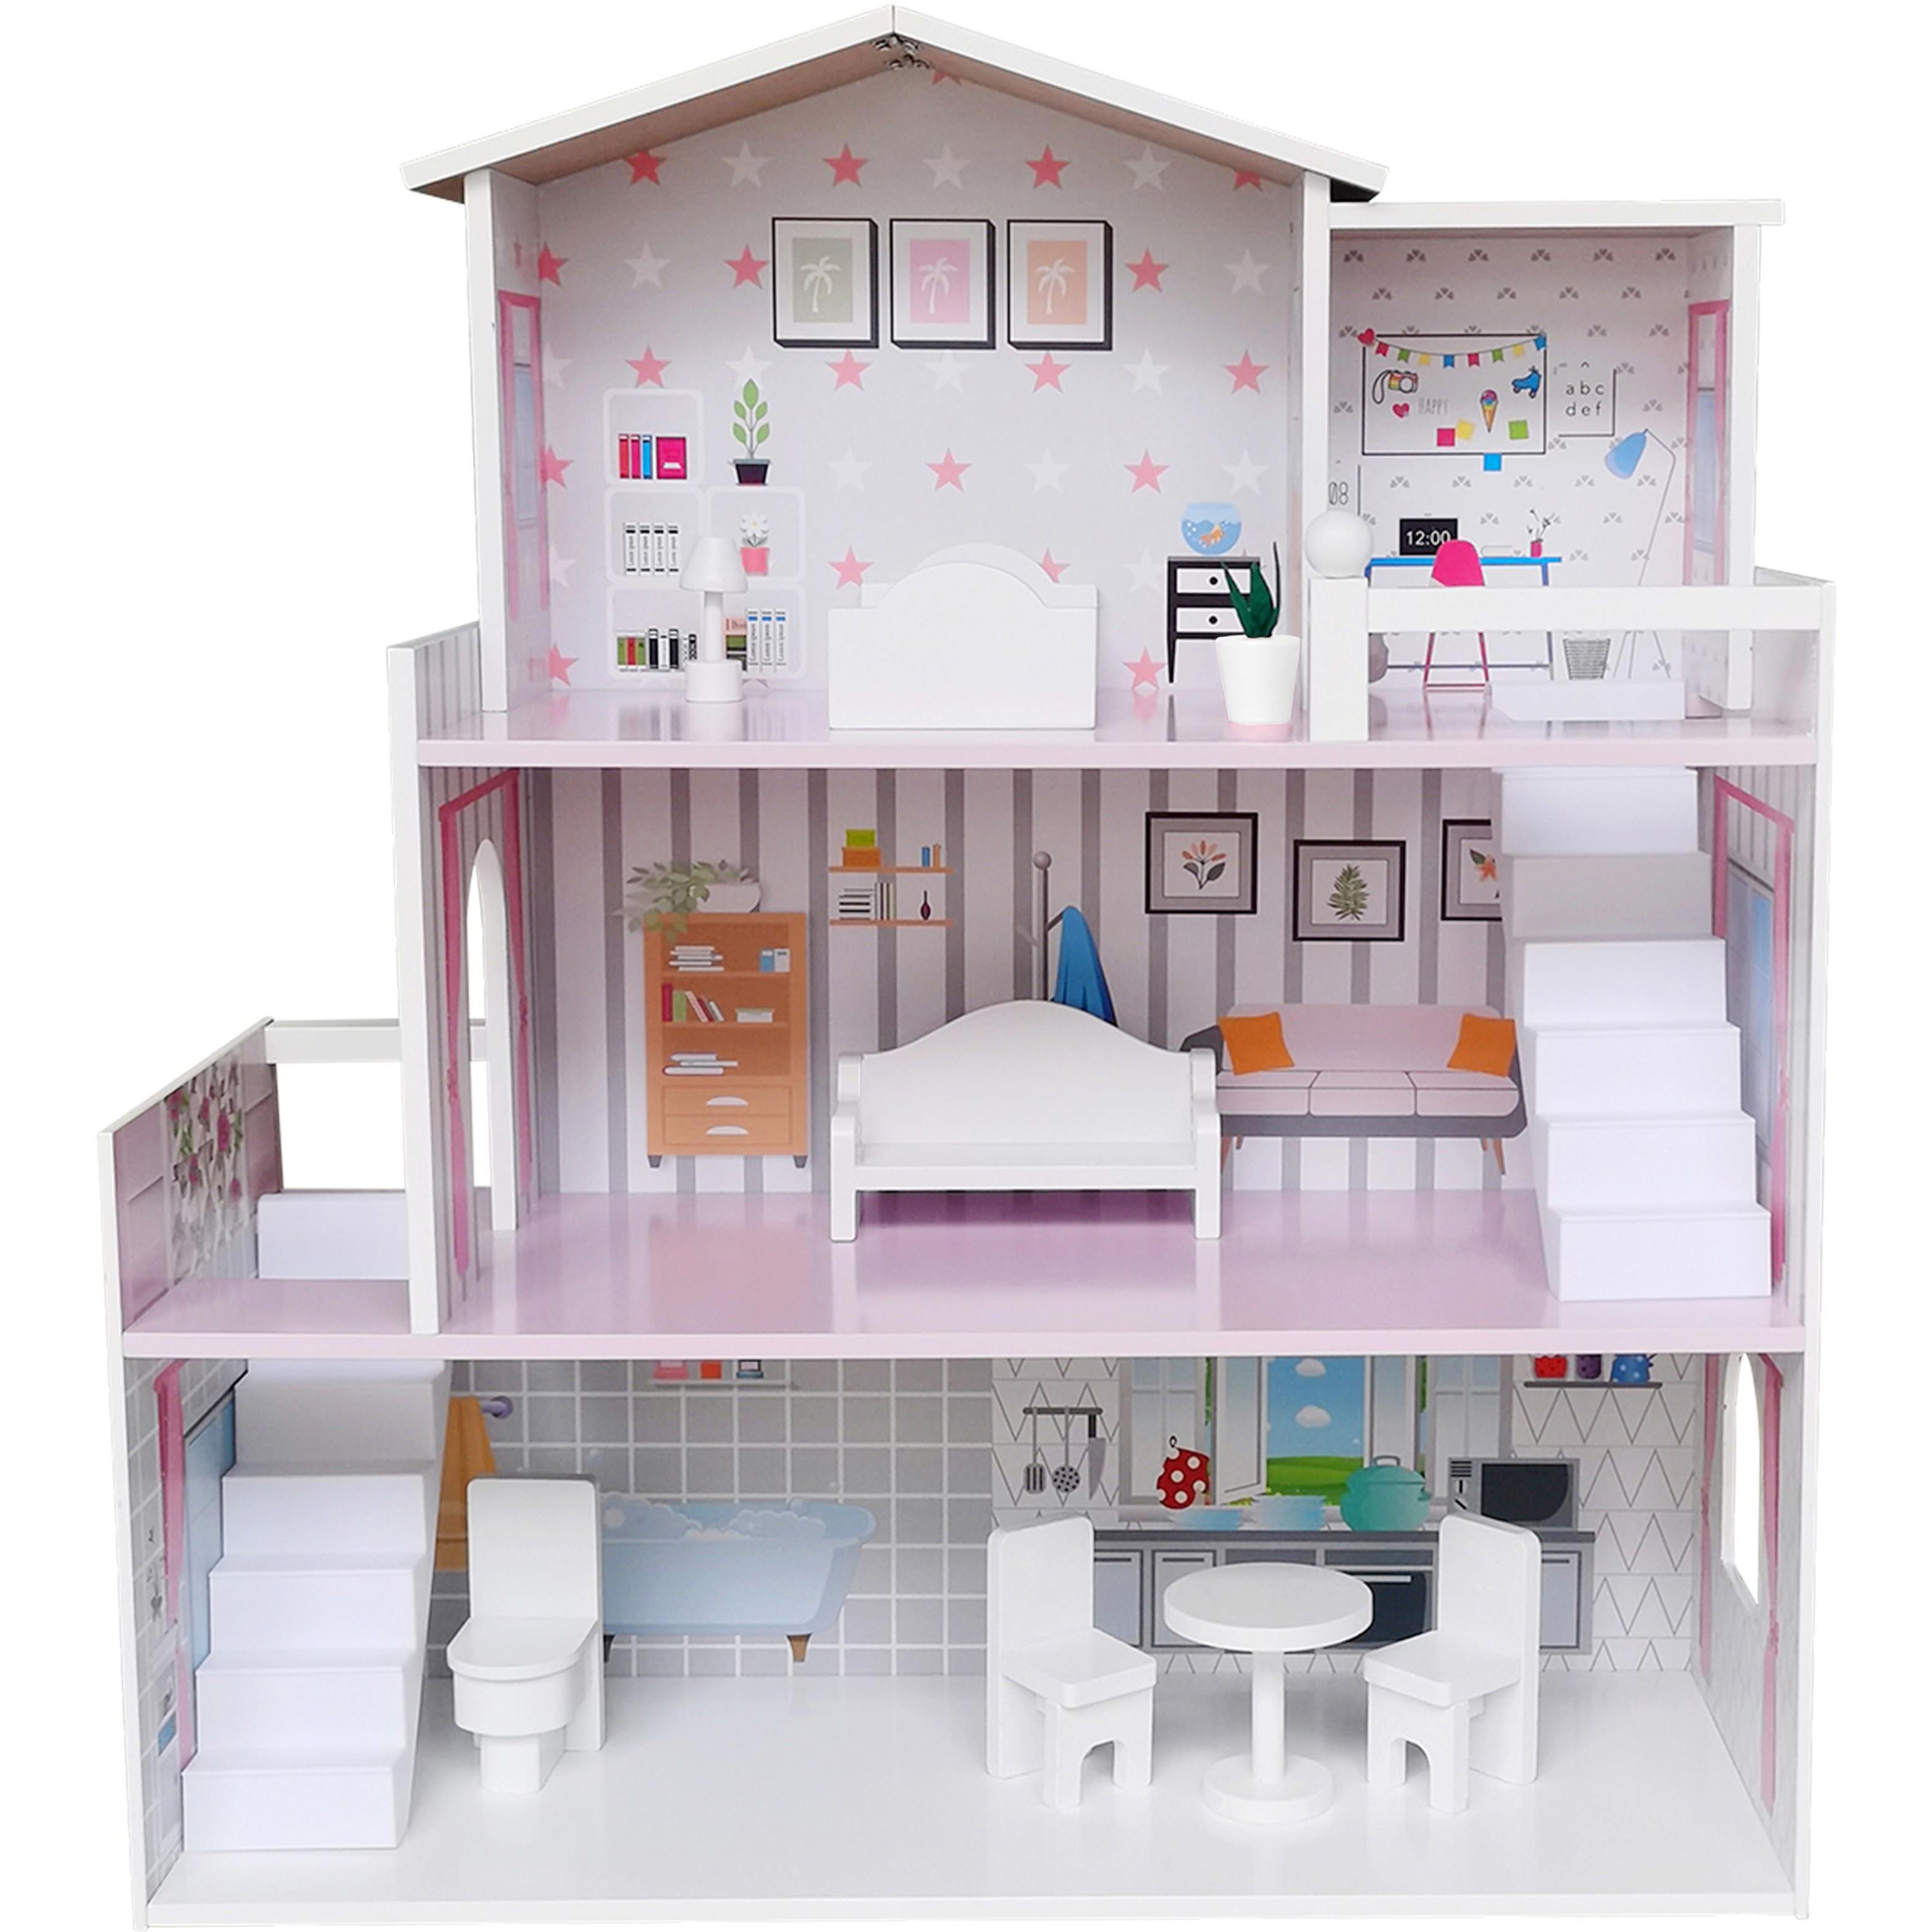 Іграшковий будиночок дерев'яний FreeON рожевий (47290) - фото 1